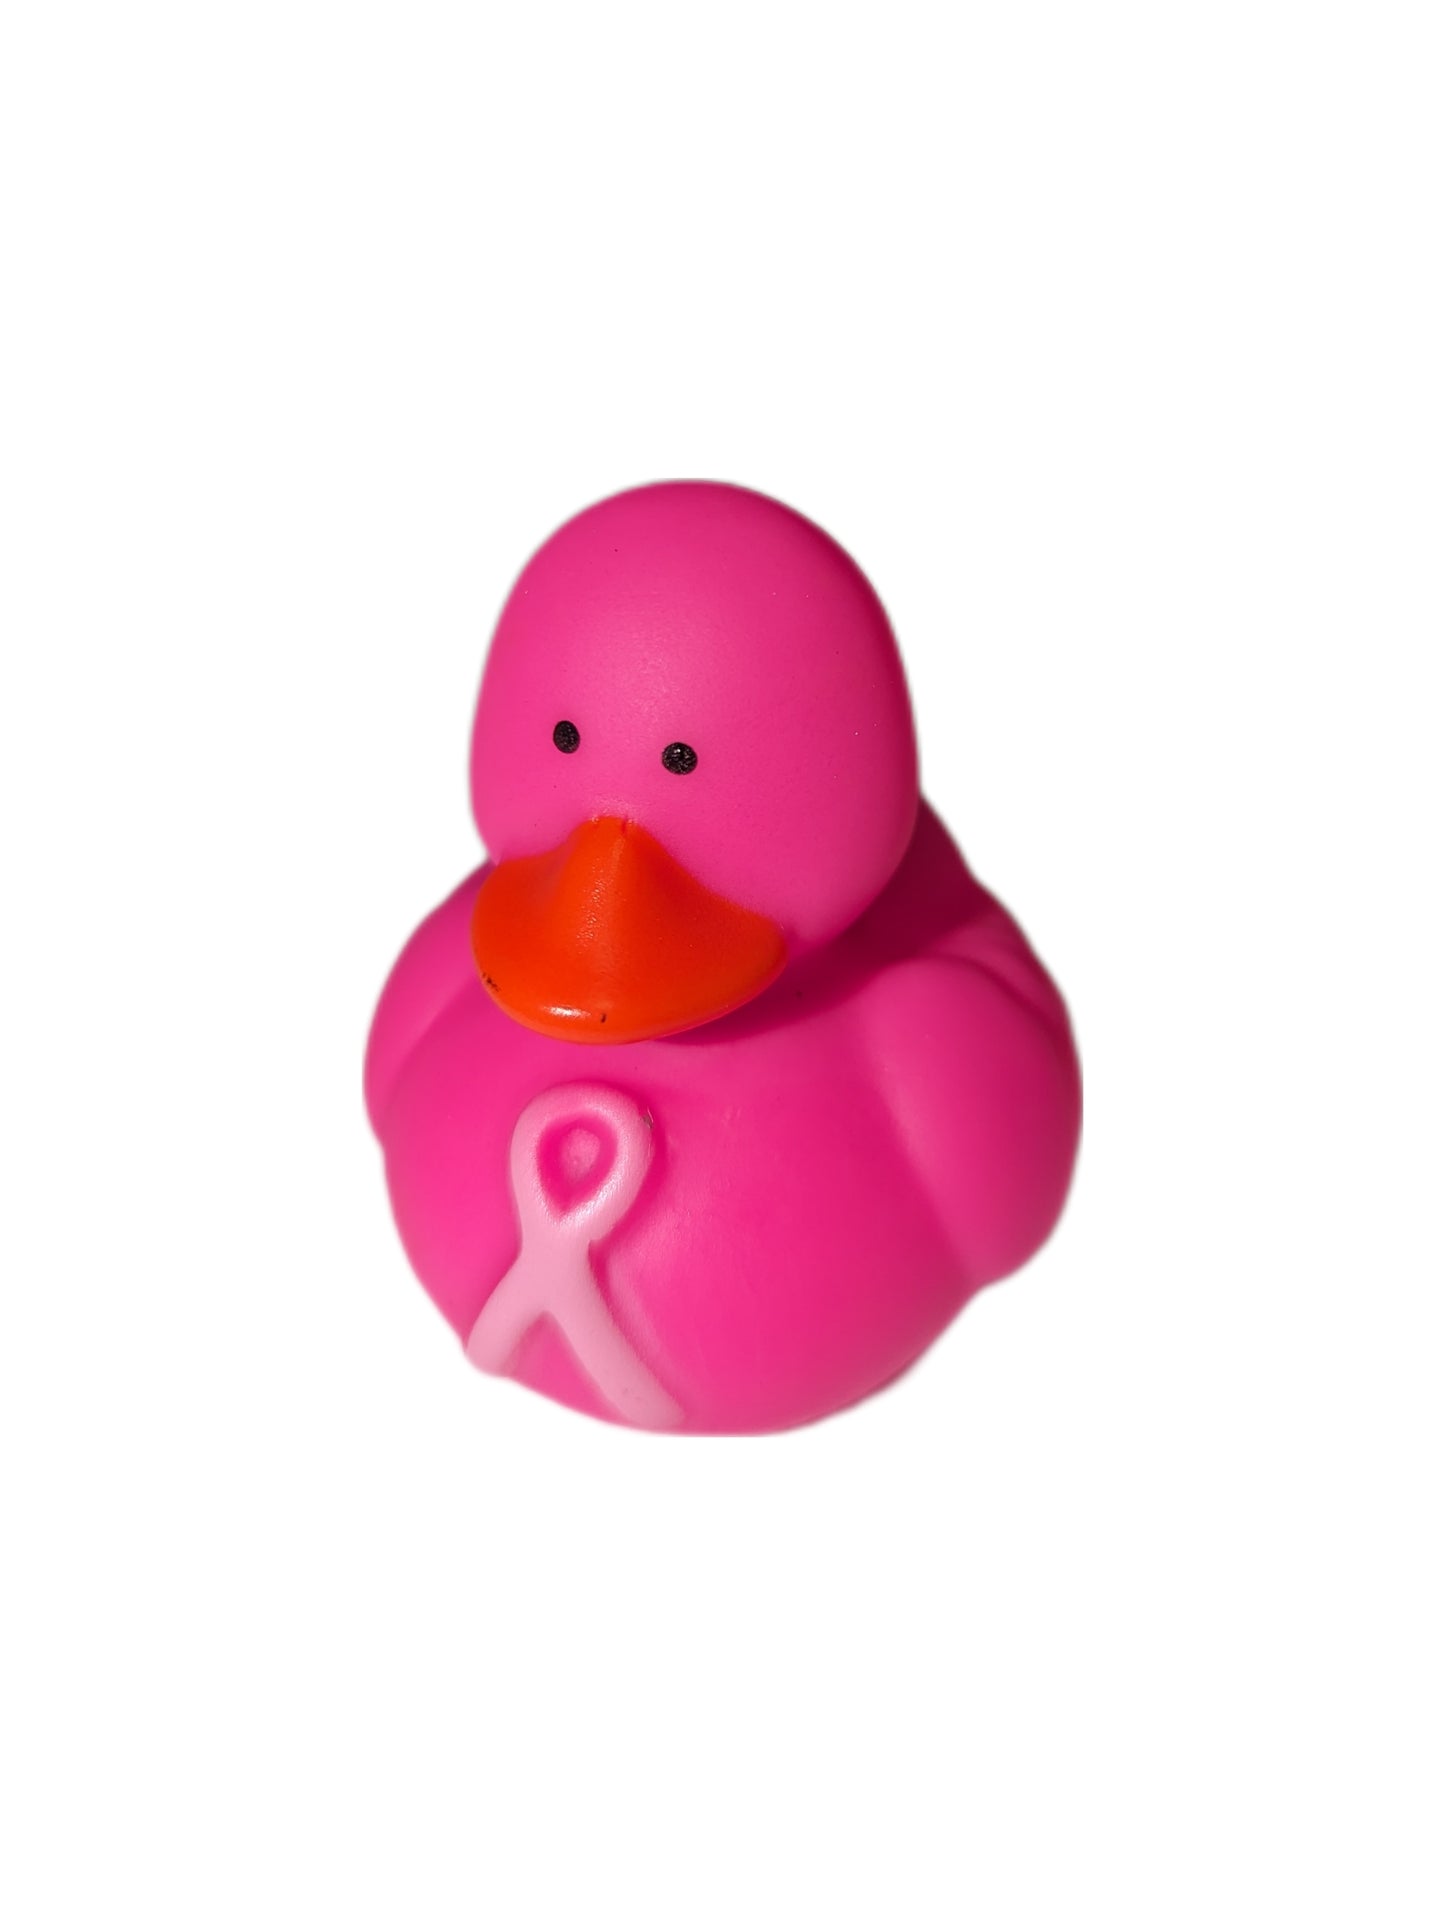 10 Hot Pink Breast Cancer Awareness Ducks - 2" Rubber Ducks